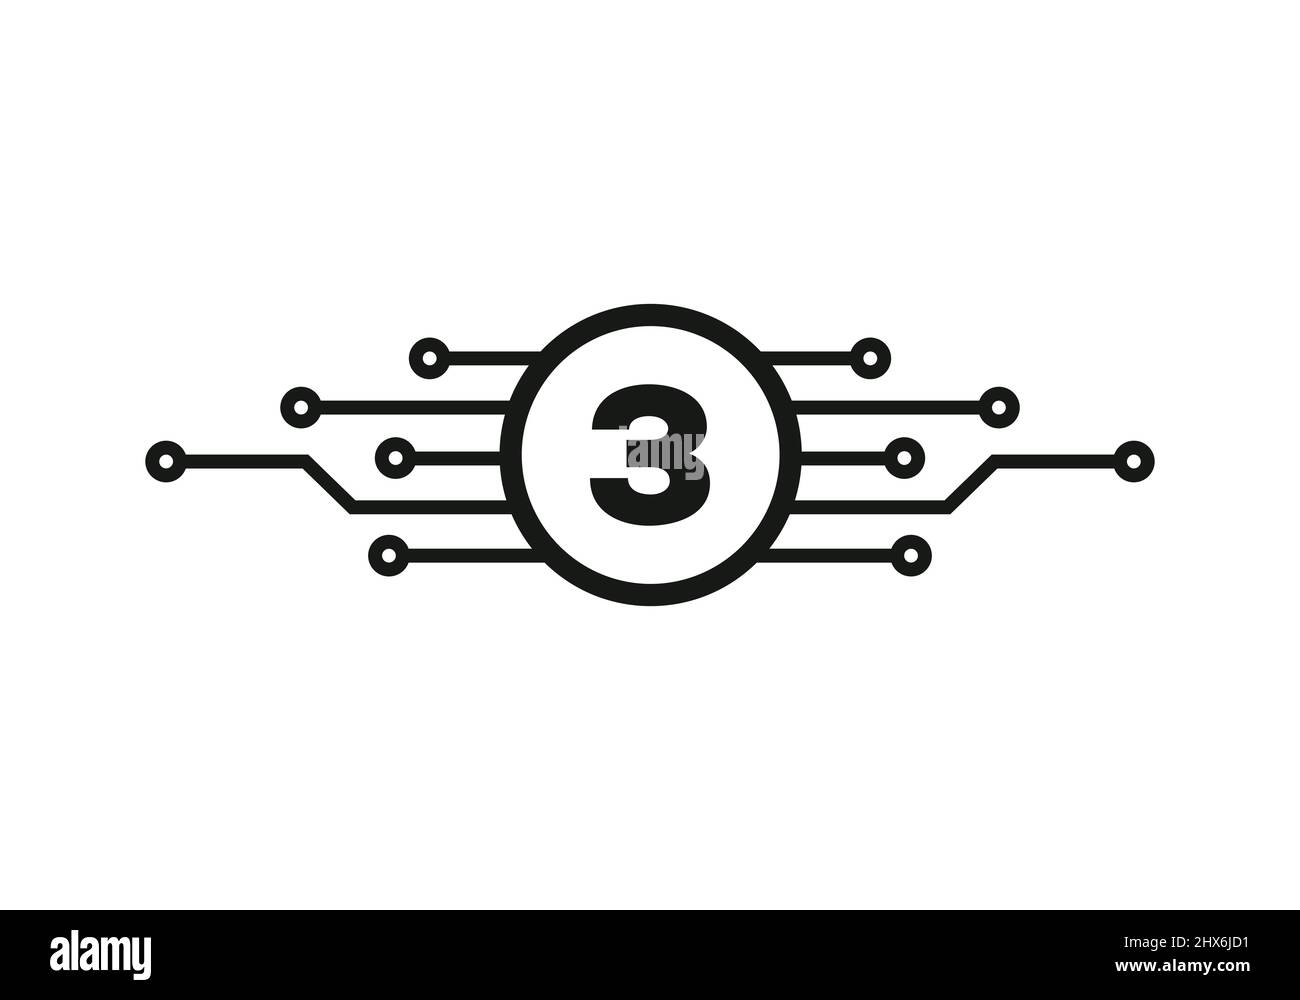 Design-Vorlage Für Letter 3 Logo. 3 Brief Für Cyber-Logo-Schutz, Technologie, Biotechnologie Und Hightech. Design Des Netzwerklogos Stock Vektor